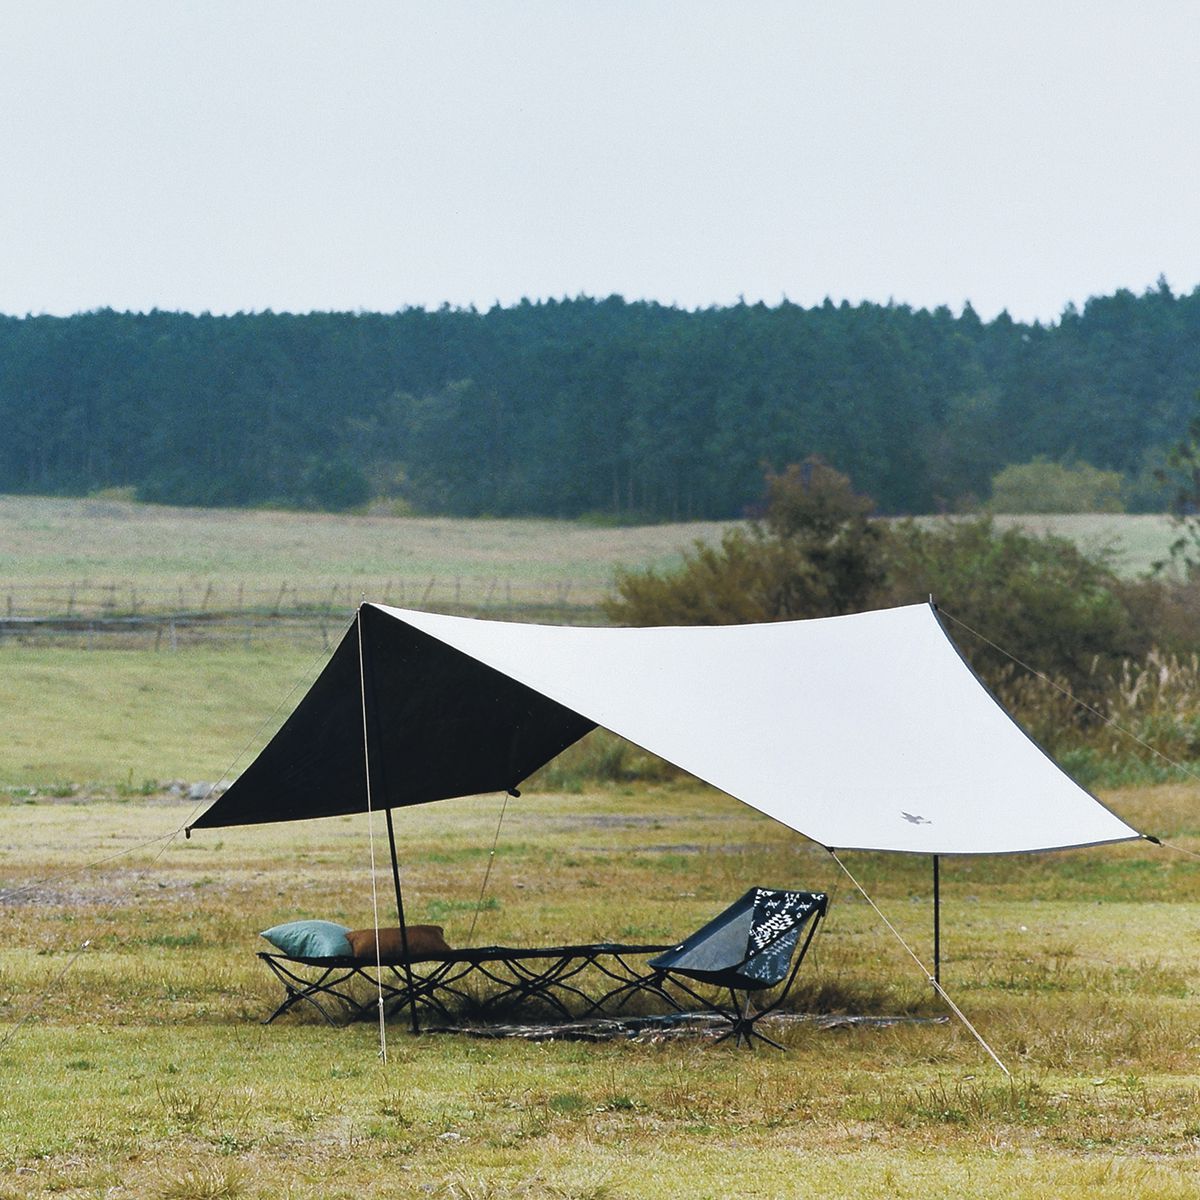 日本LOGOS天幕帐篷户外露营黑胶幕布遮阳防紫外线防雨公园全遮光